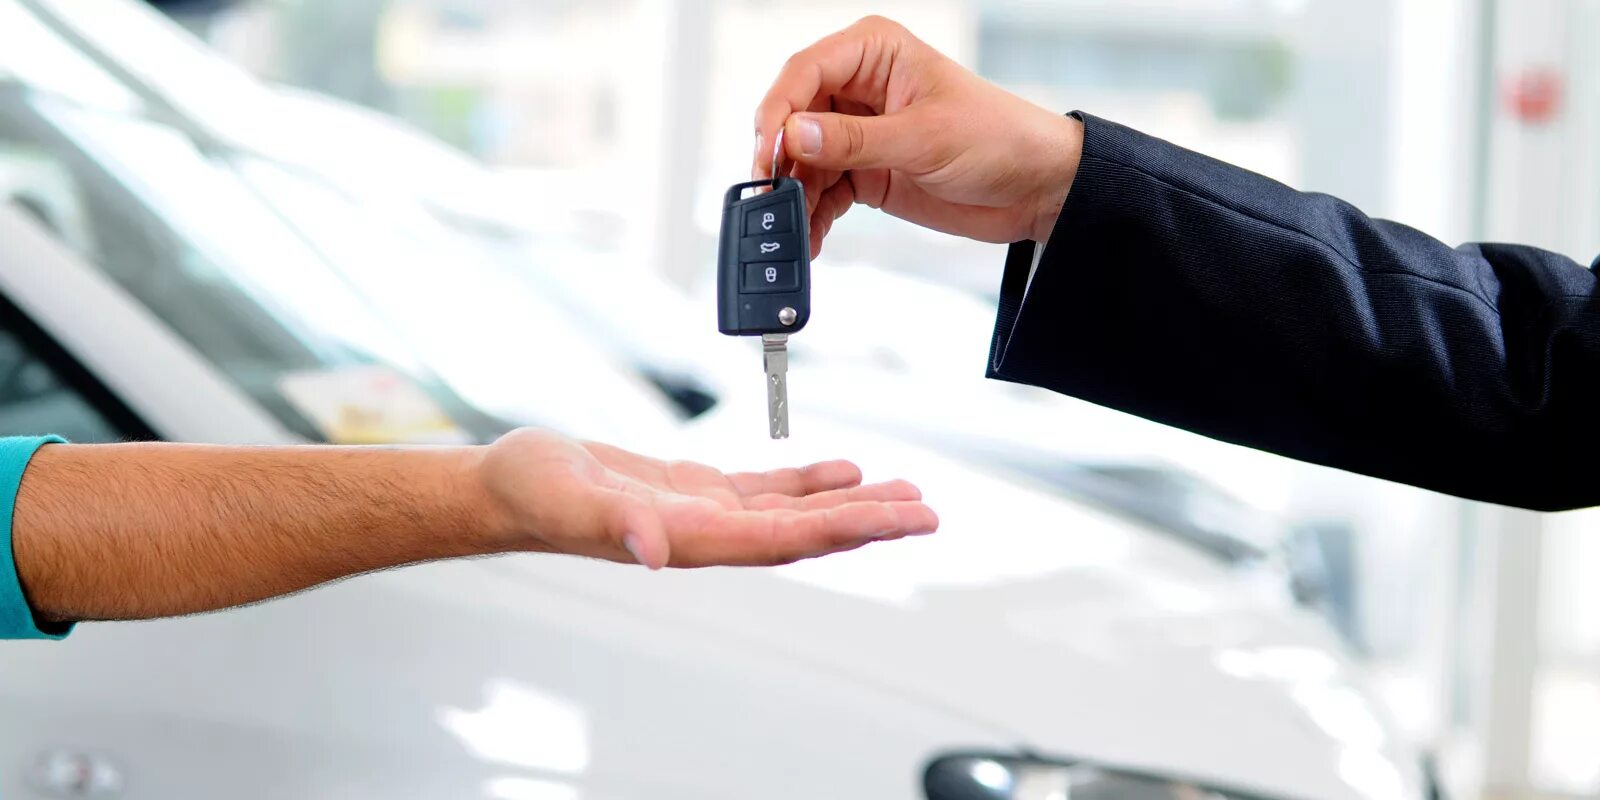 Оформить покупку с рук. Ключи от автомобиля. Передача ключей от машины. Ключи от машины в руке. Передает ключи от машины.